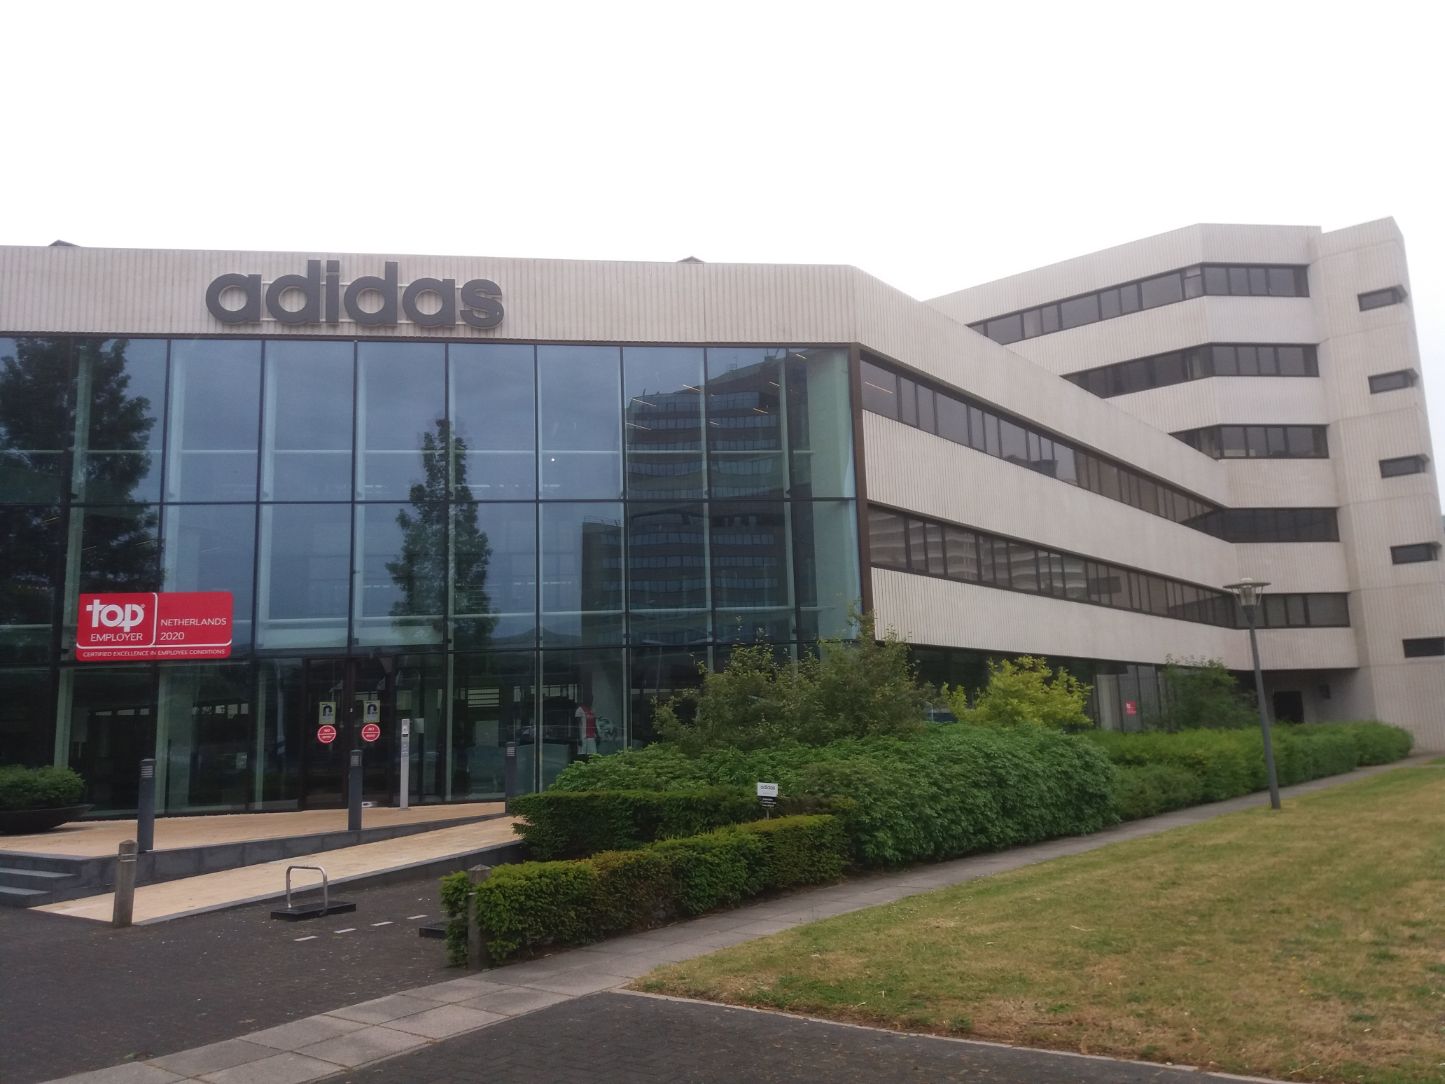 Analisten verwachten over 2021 dalende Adidas | Analist.nl